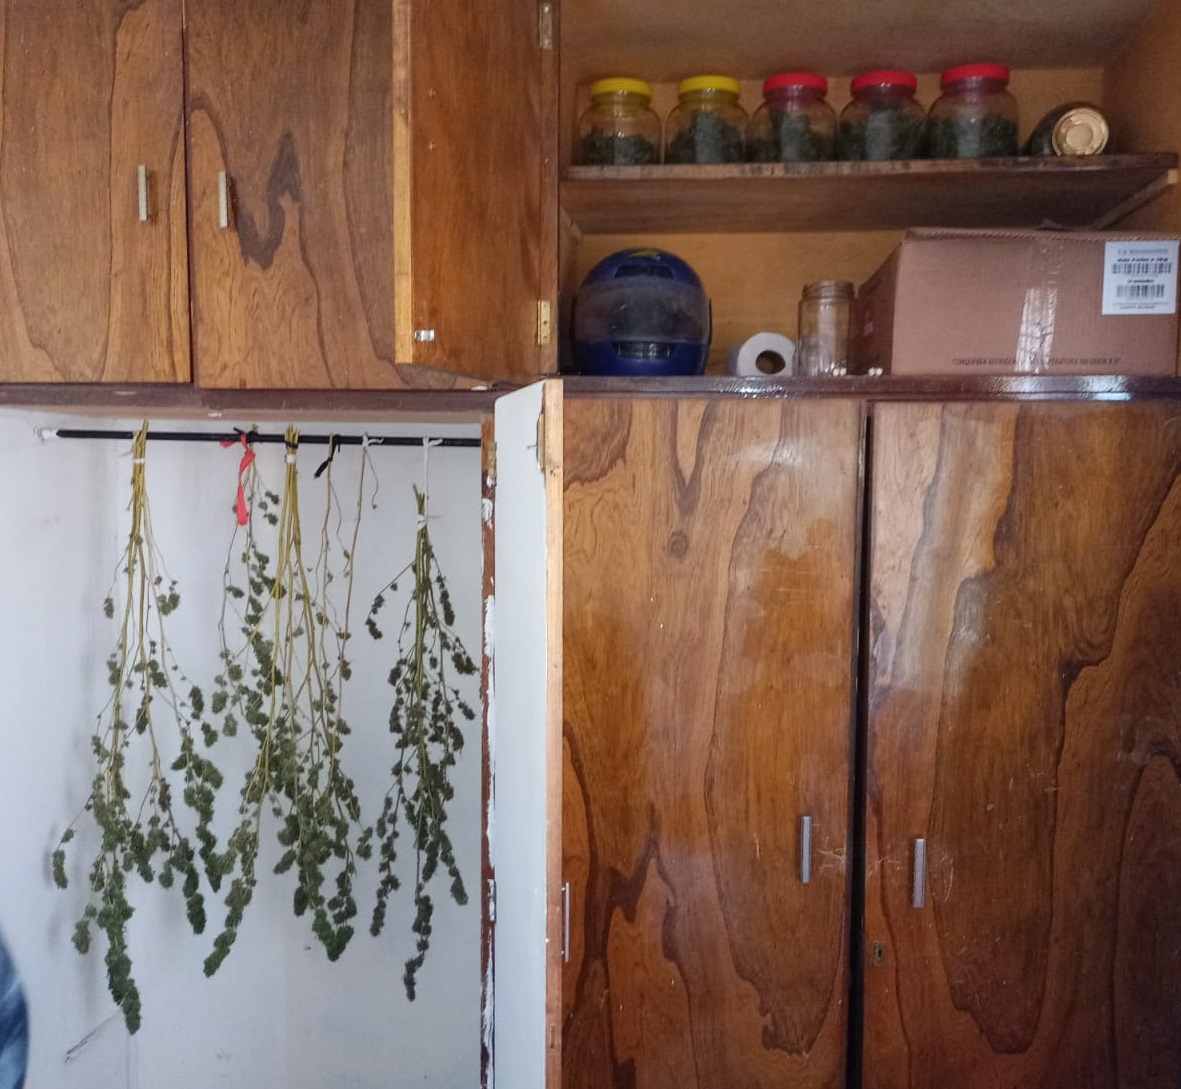 Los policías encontraron en un armario la marihuana prensada y los "cogollos" (flores) (foto: gentileza)